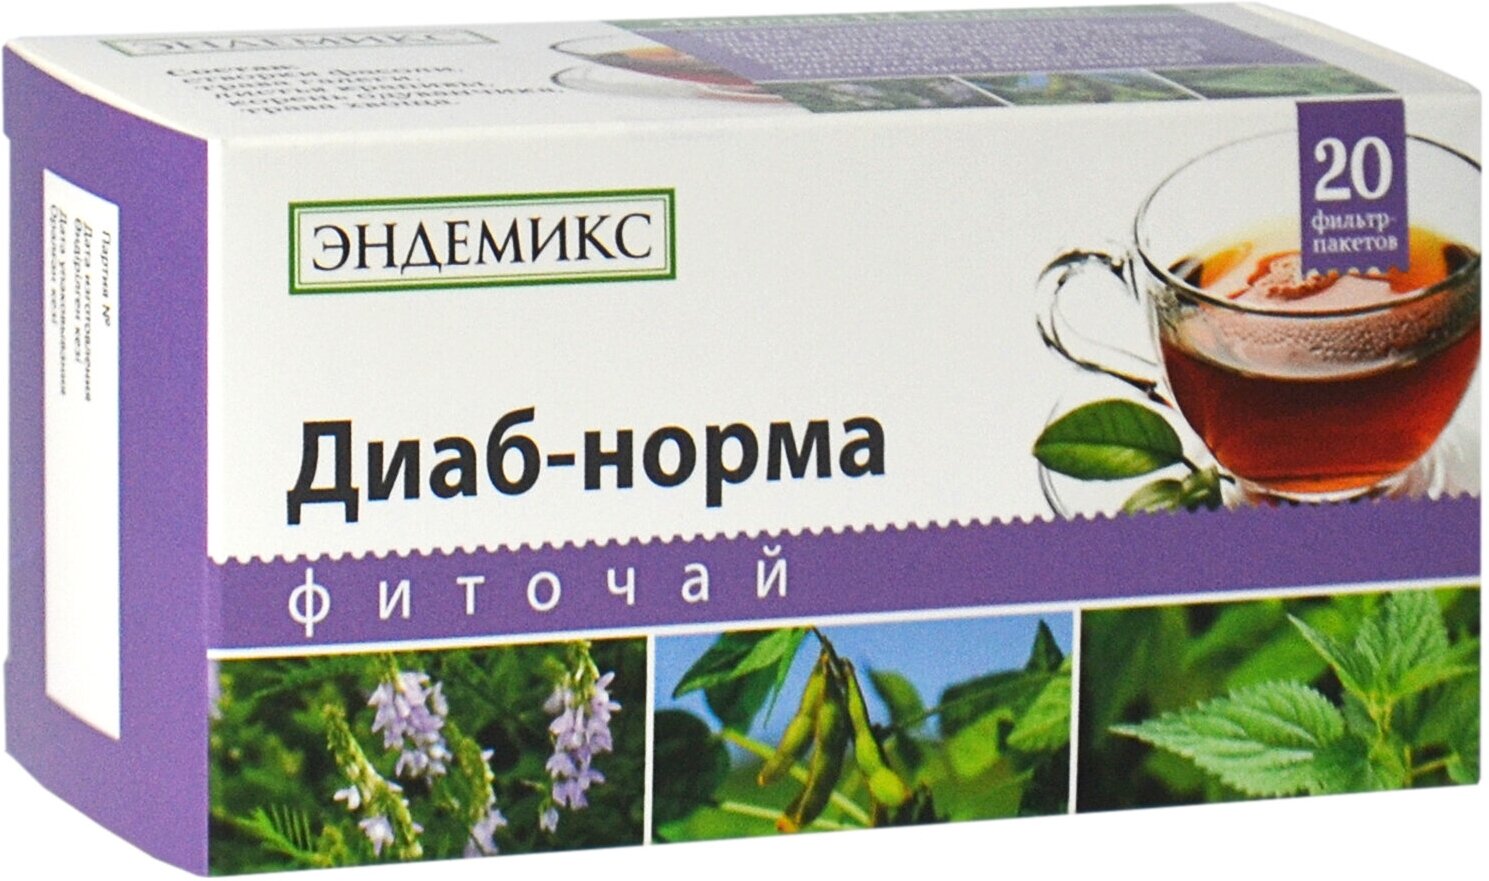 Травяной чай Эндемикс в пакетиках «Диаб-норма» при диабете, для нормализации сахара в крови, эластичности сосудов, 20 шт.